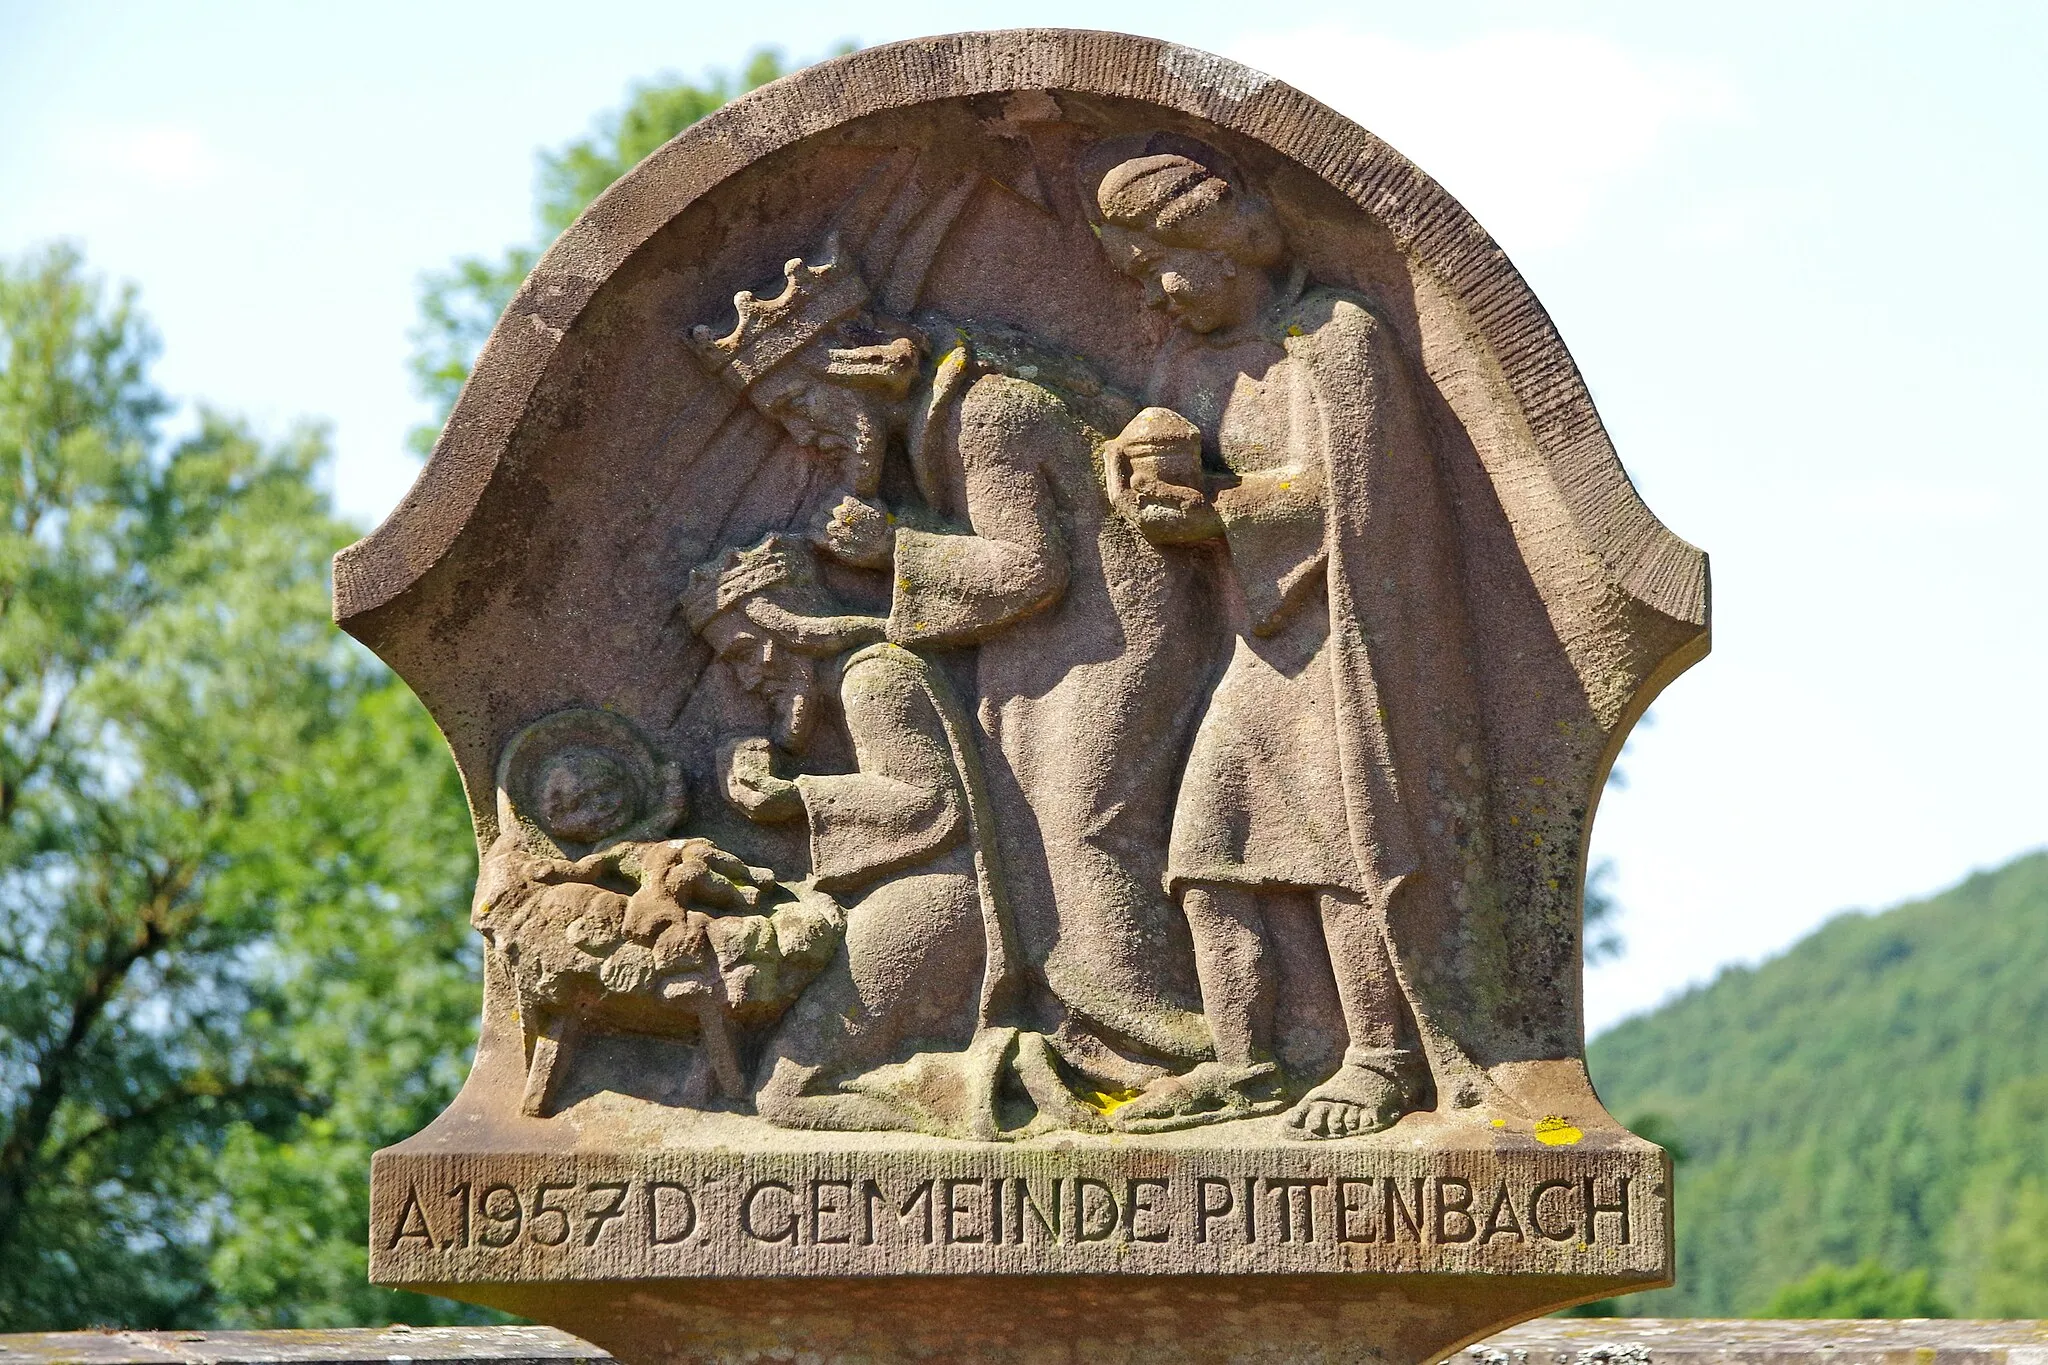 Photo showing: Pittenbach, Dreikönigs-Bildstock (1957)